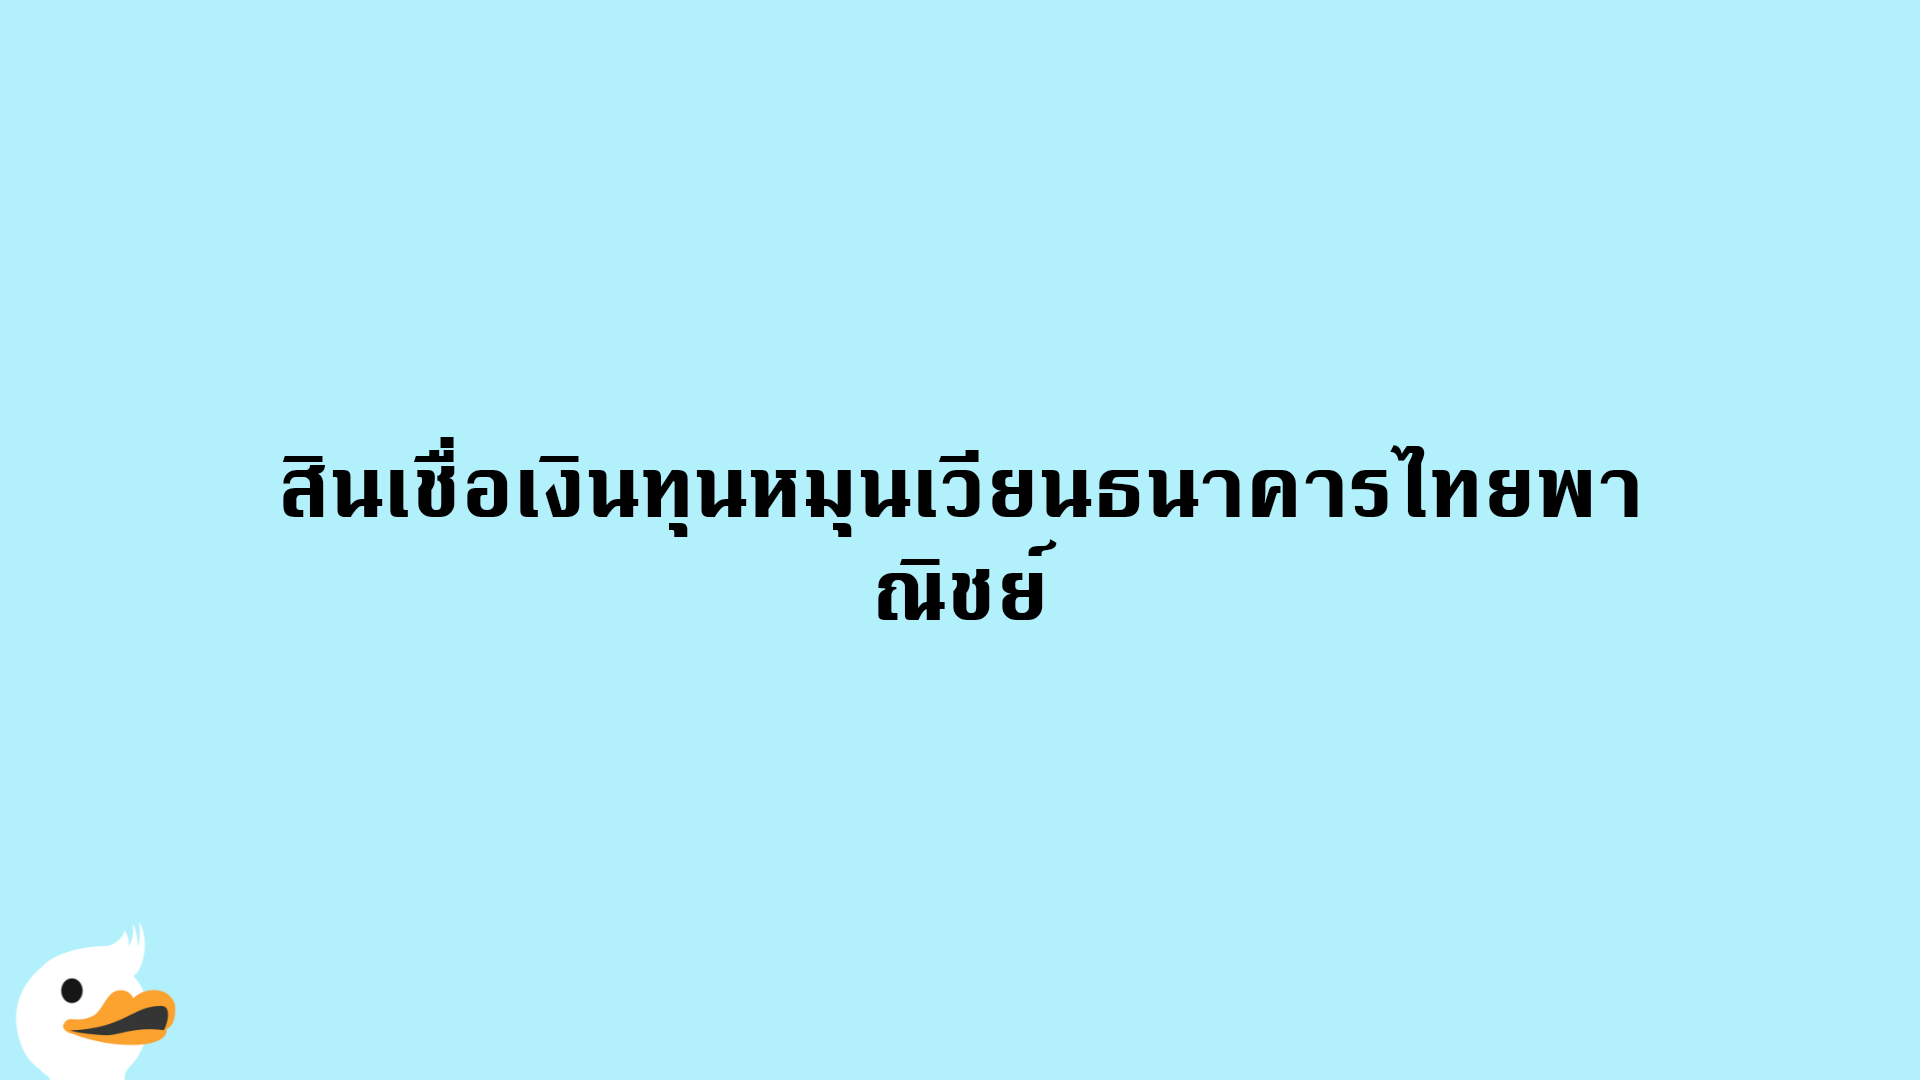 สินเชื่อเงินทุนหมุนเวียนธนาคารไทยพาณิชย์